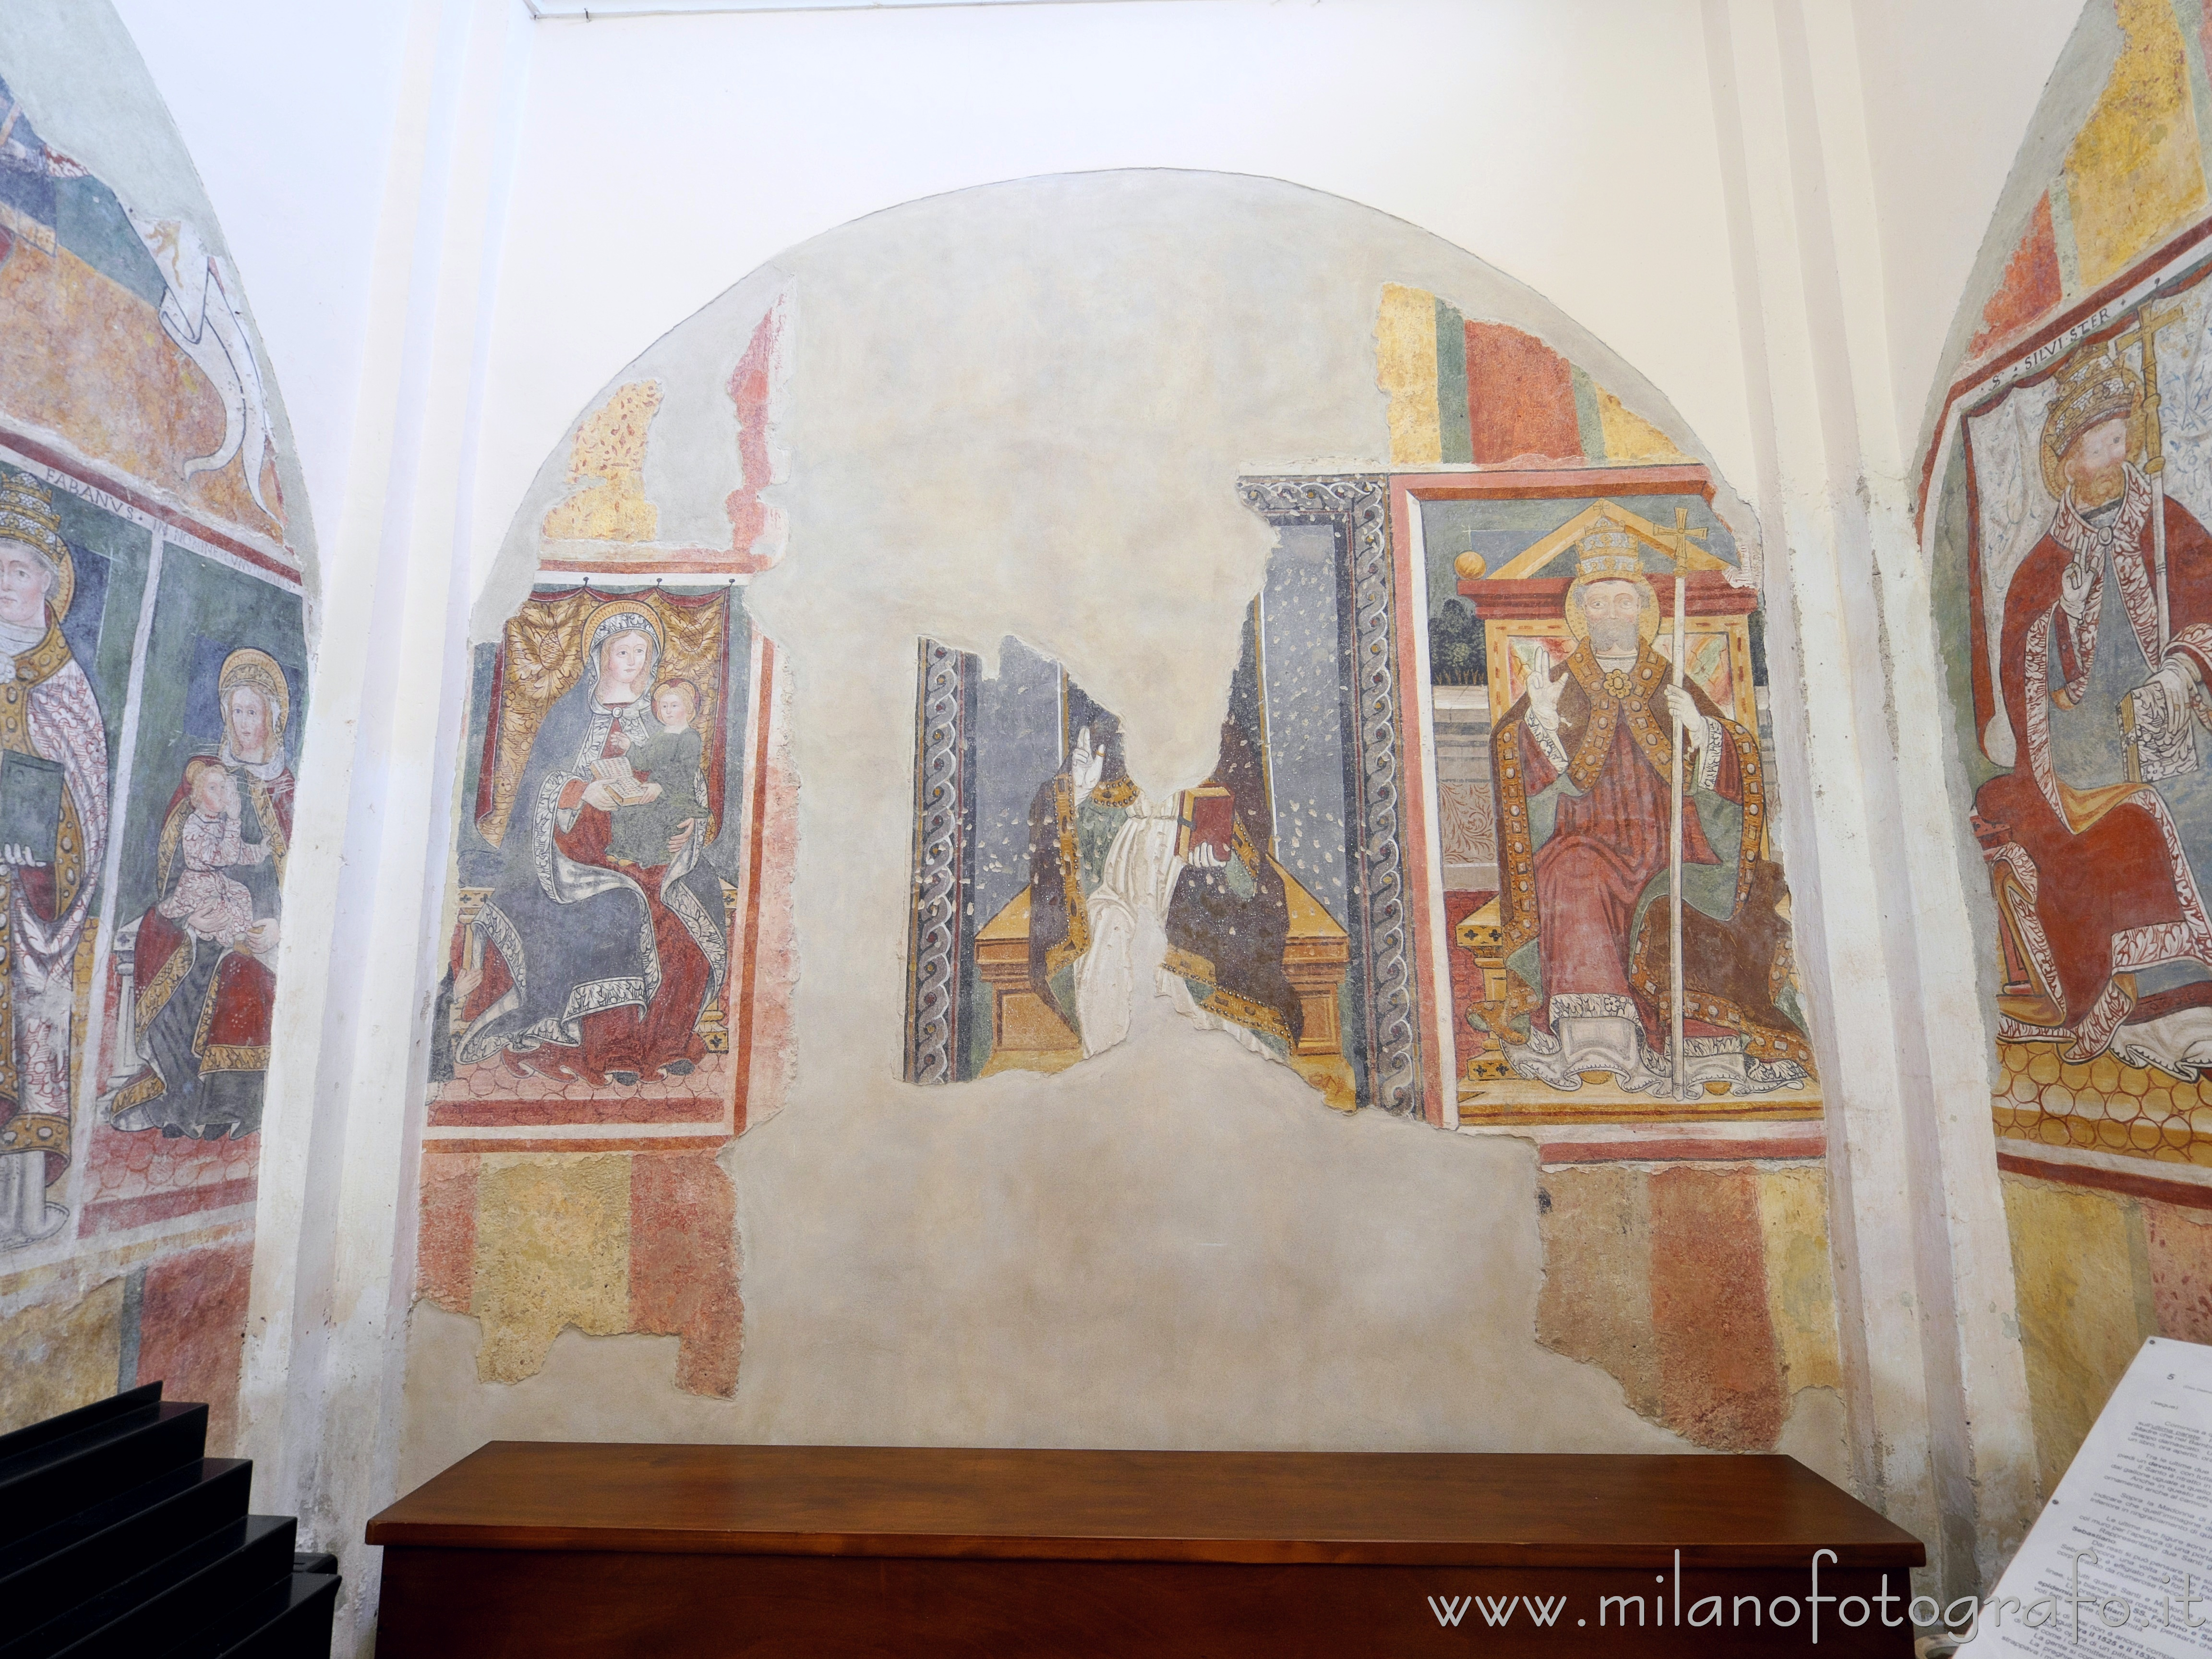 Occhieppo Inferiore (Biella, Italy): Choir of the Sanctuary of St. Clement - Occhieppo Inferiore (Biella, Italy)